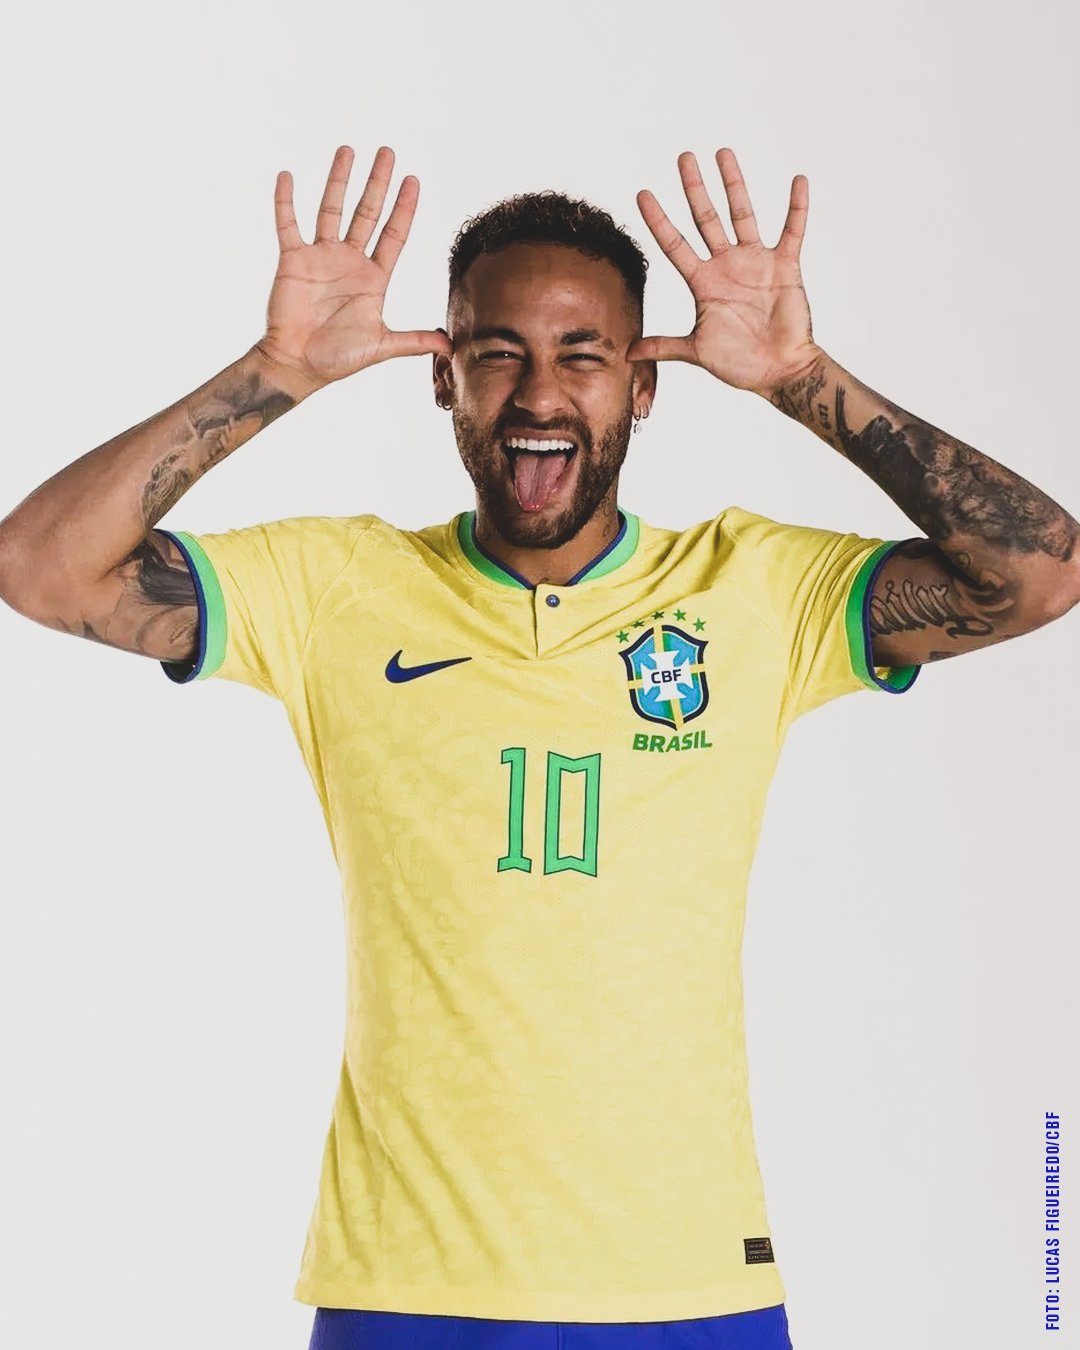 EITA PORR@! 😱😬 O pacote legend Neymar - TNT Sports Brasil